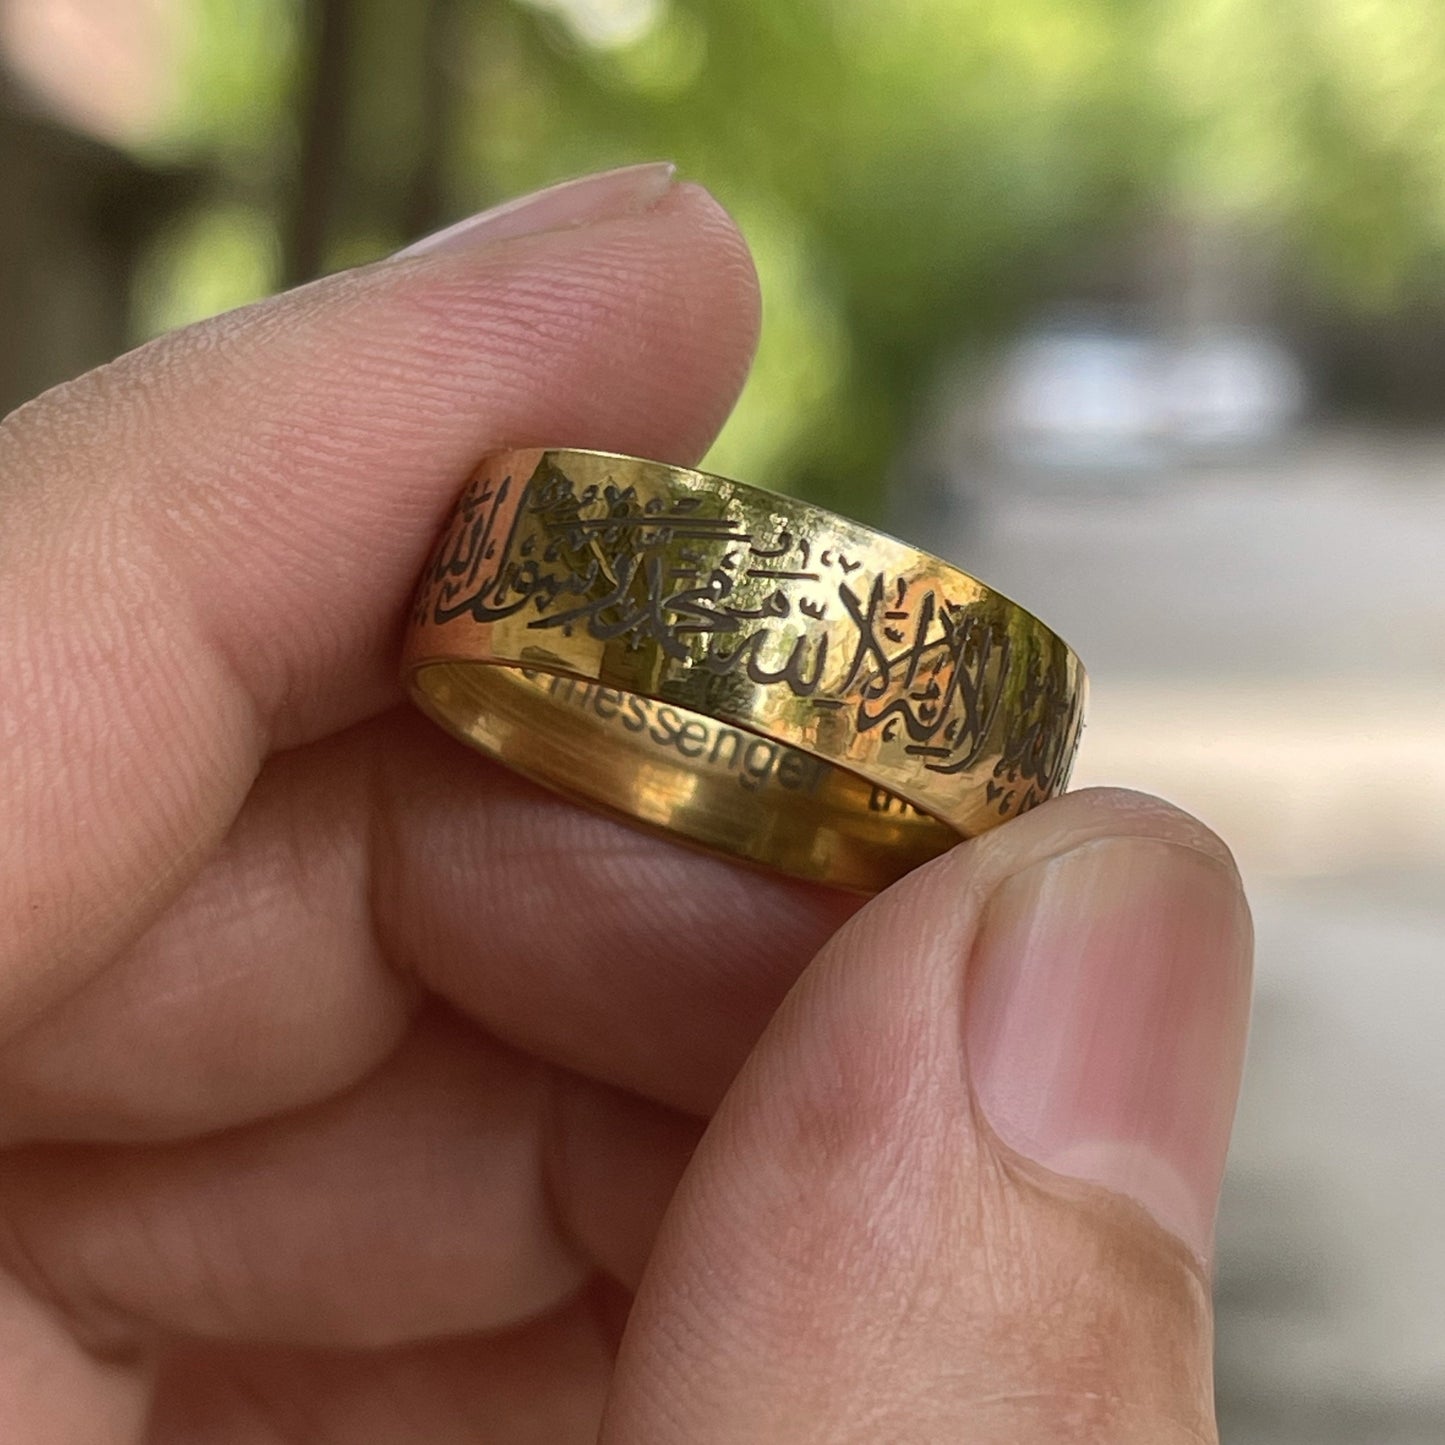 Kalma Islamic Ring For Men Women (Golden)